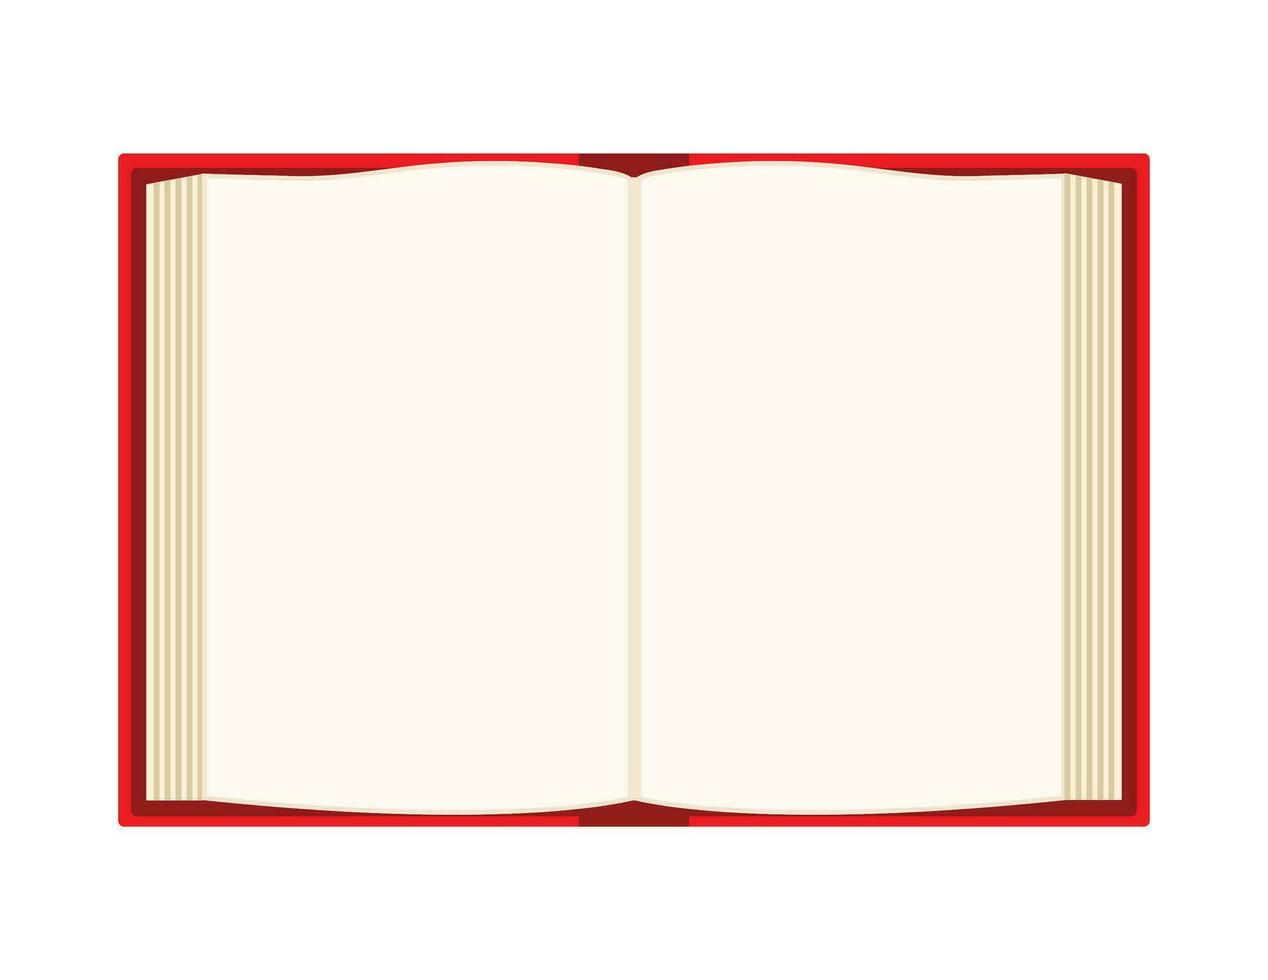 öppen bok över vit bakgrund. röd bok. tom sidor. vektor illustration.